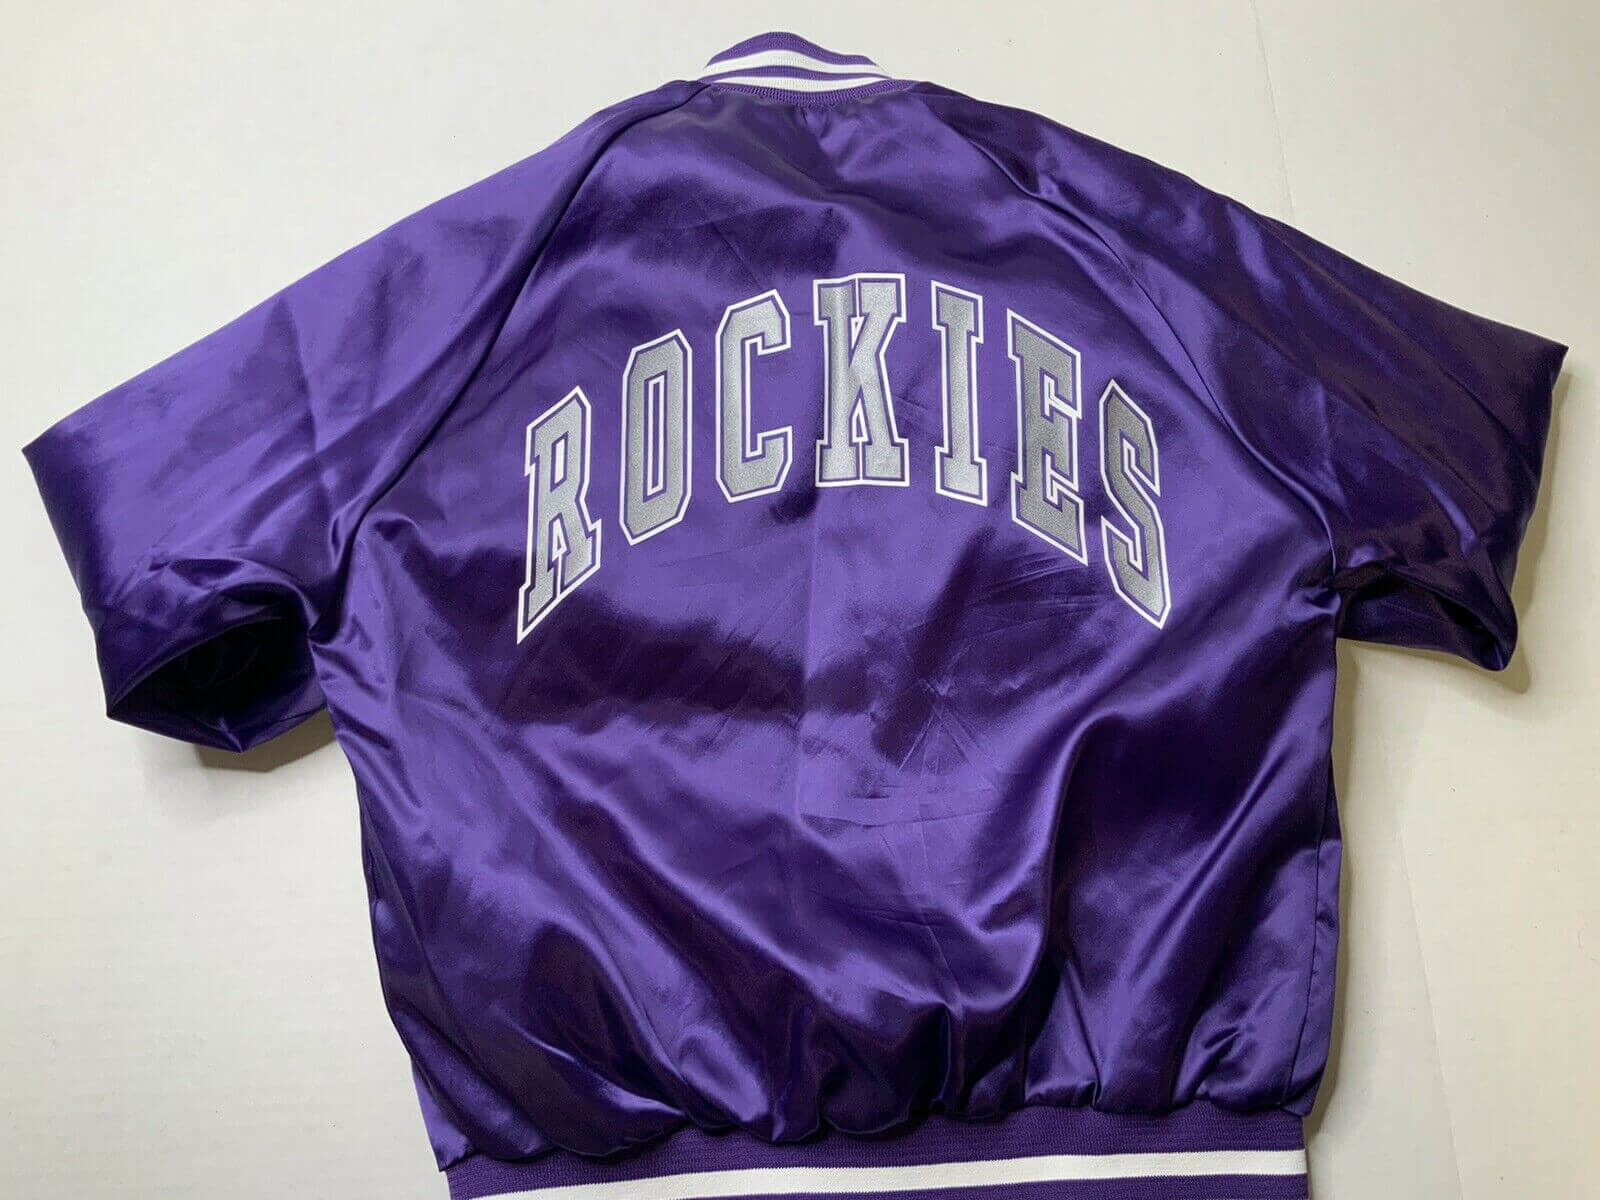 Colorado Rockies Throwback Jerseys, Vintage MLB Gear